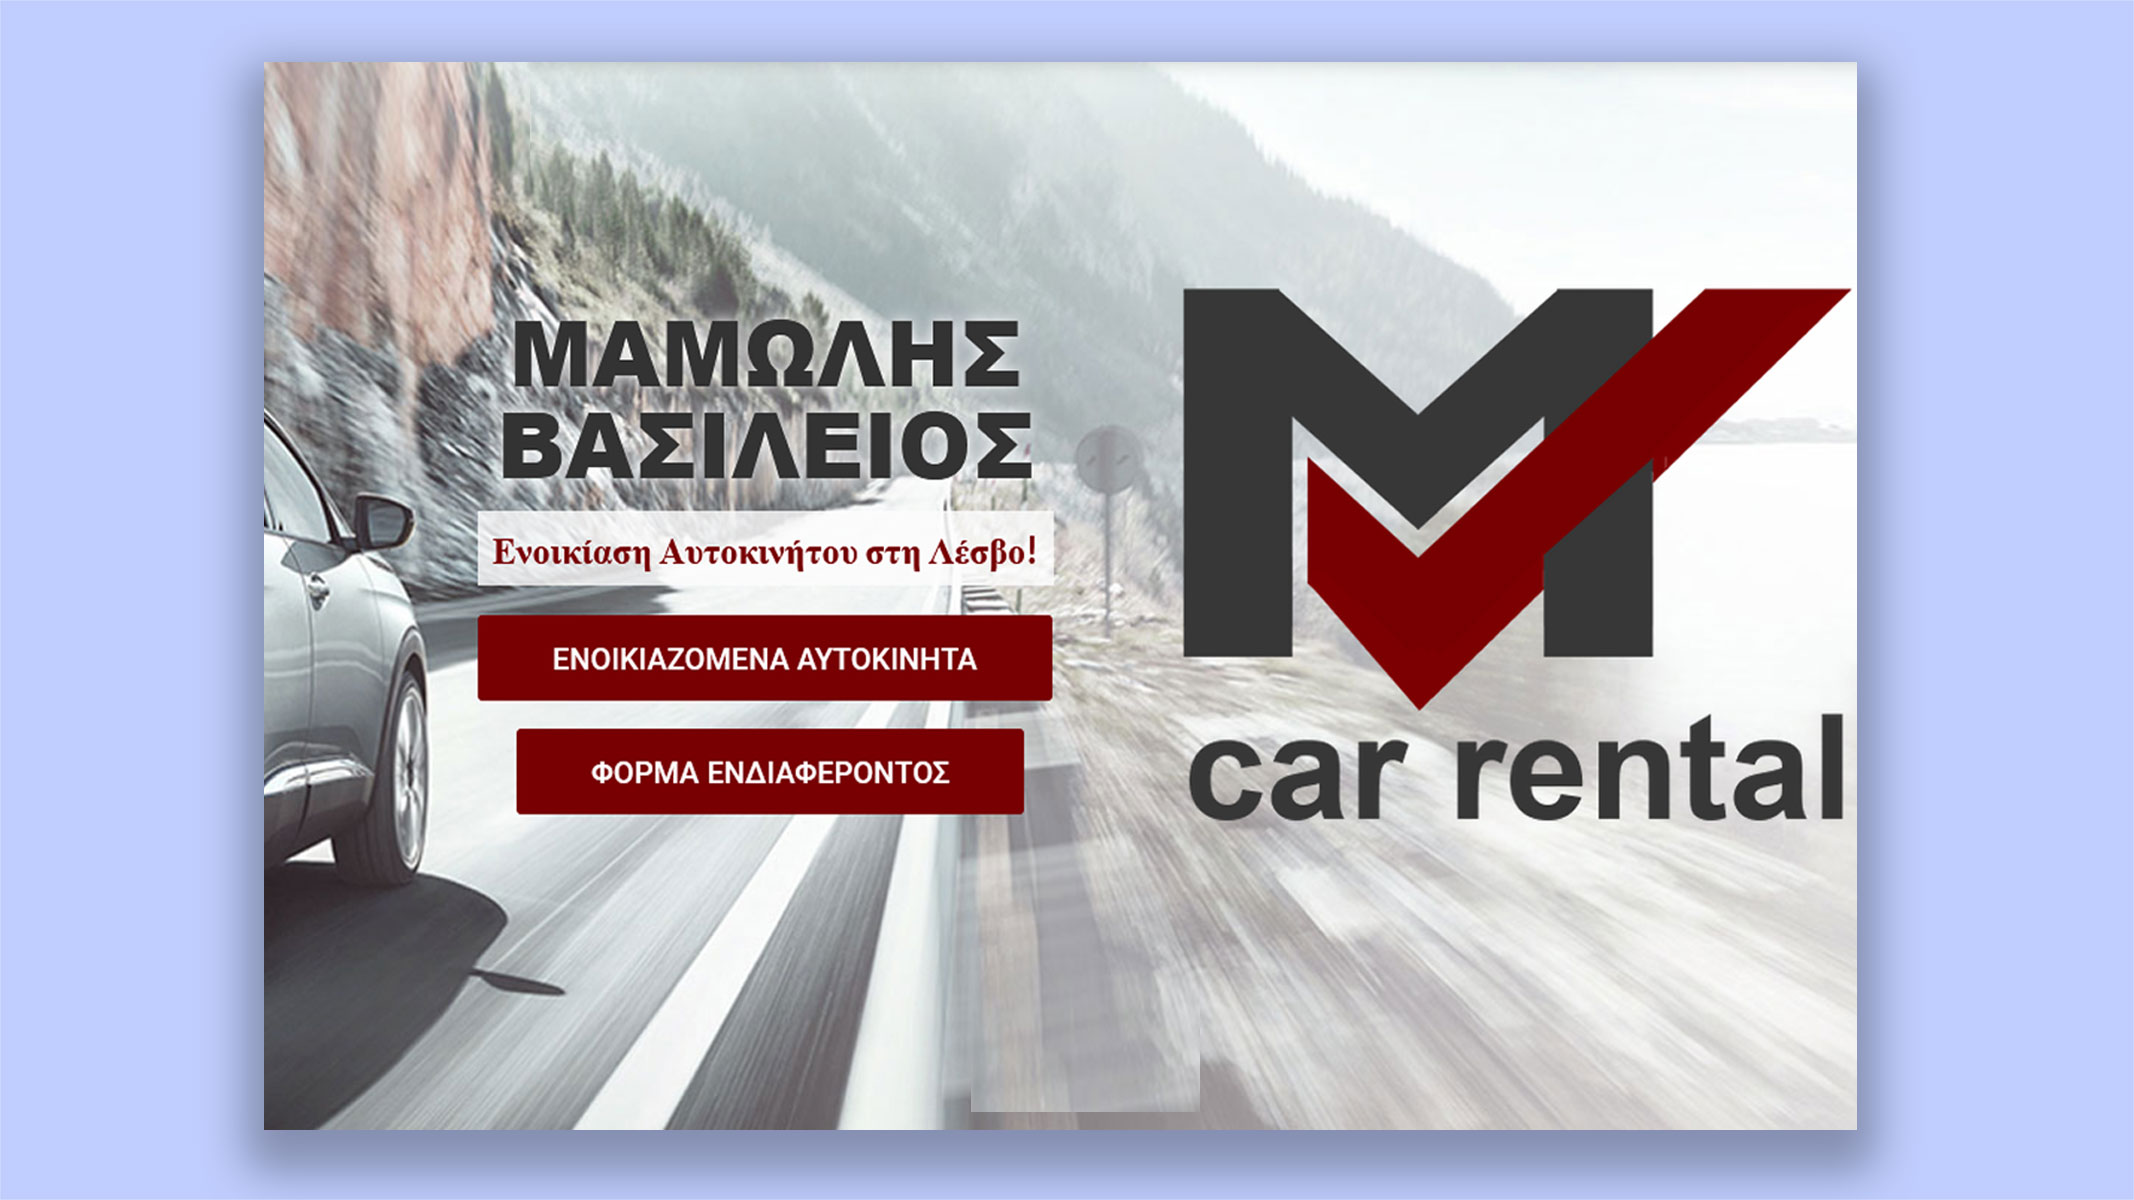 MV Car Rental